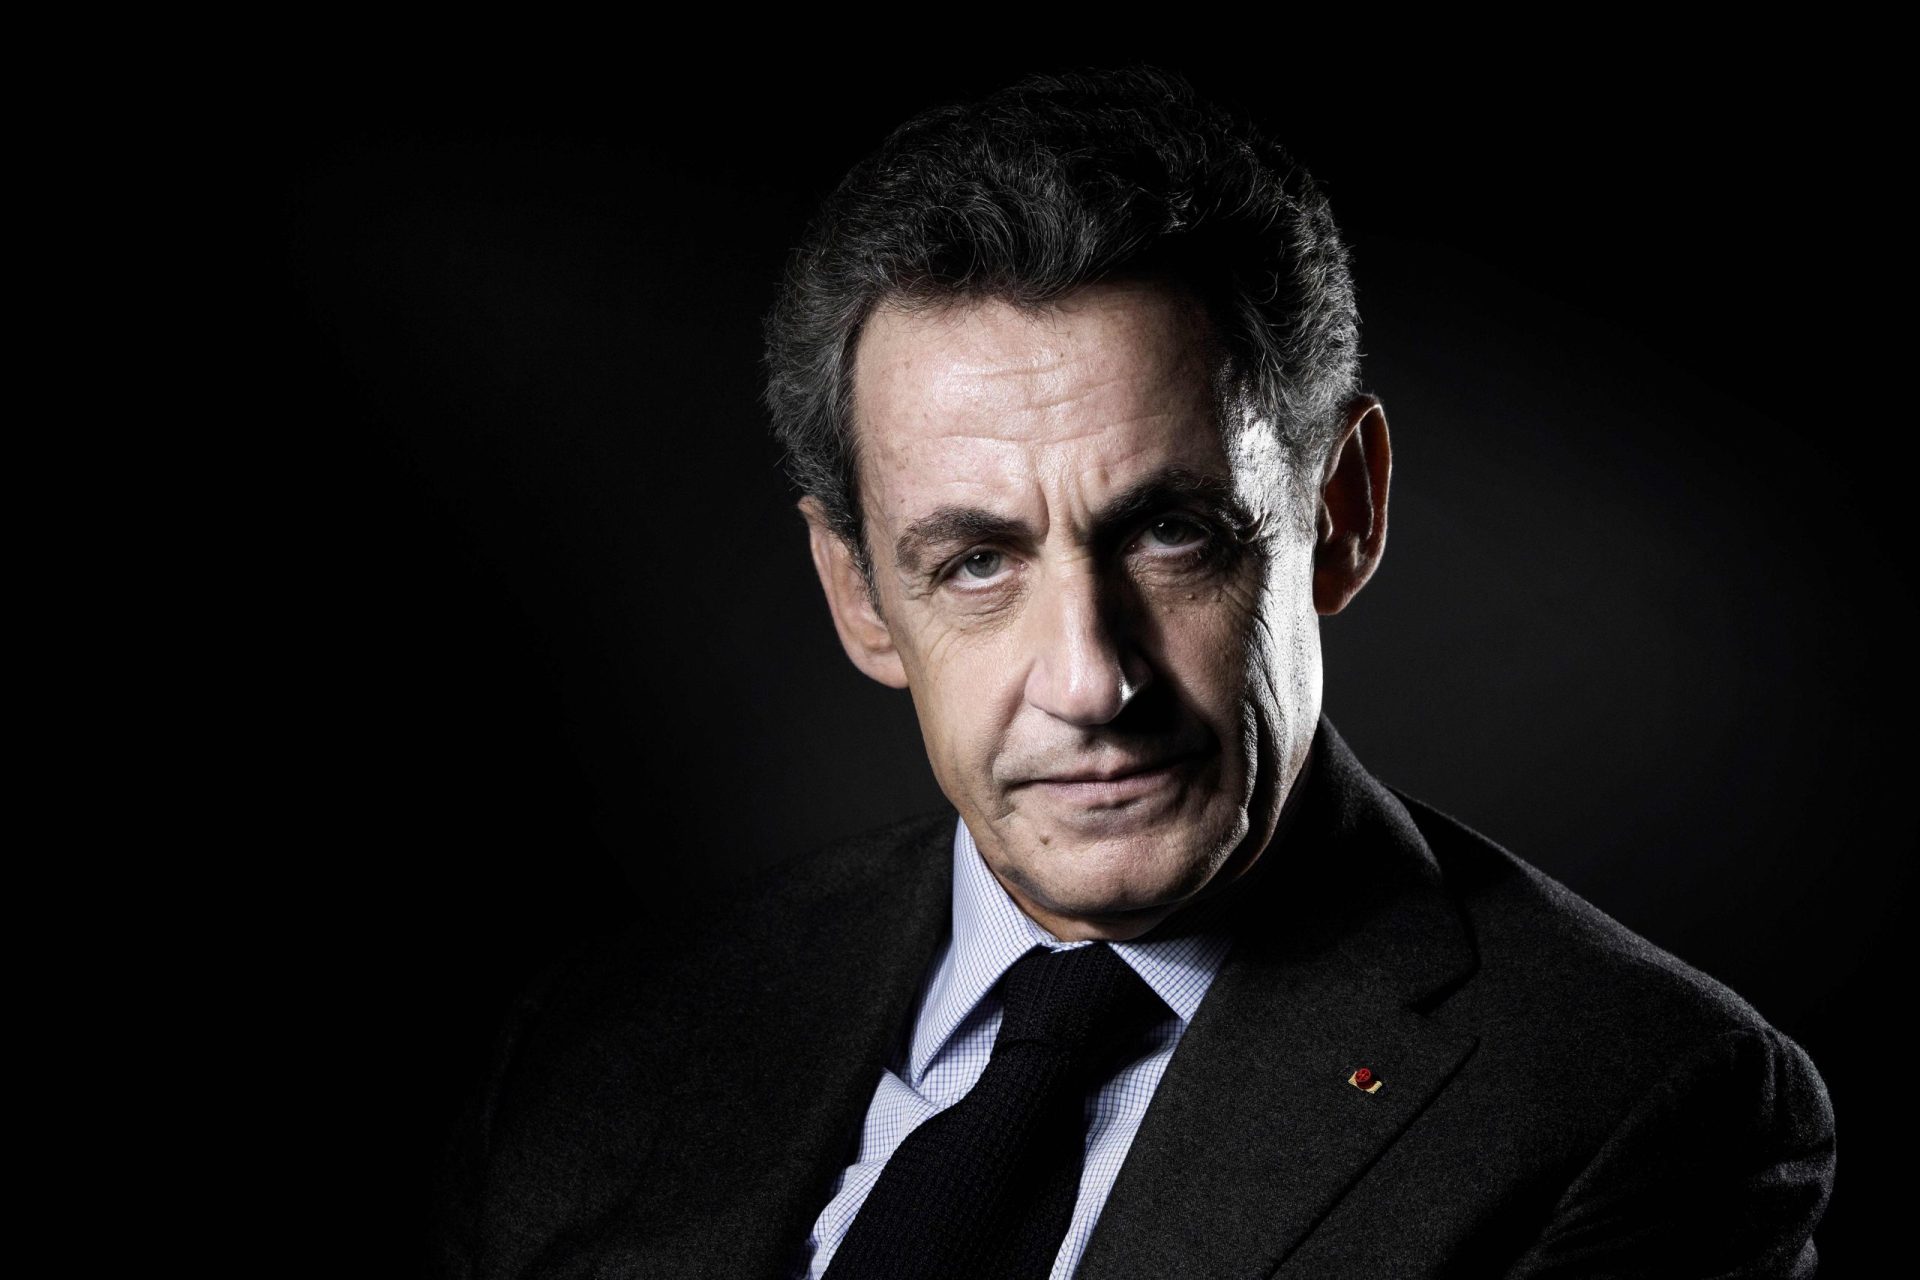 França. Sarkozy sai sob fiança e diz que a vida “está um inferno”